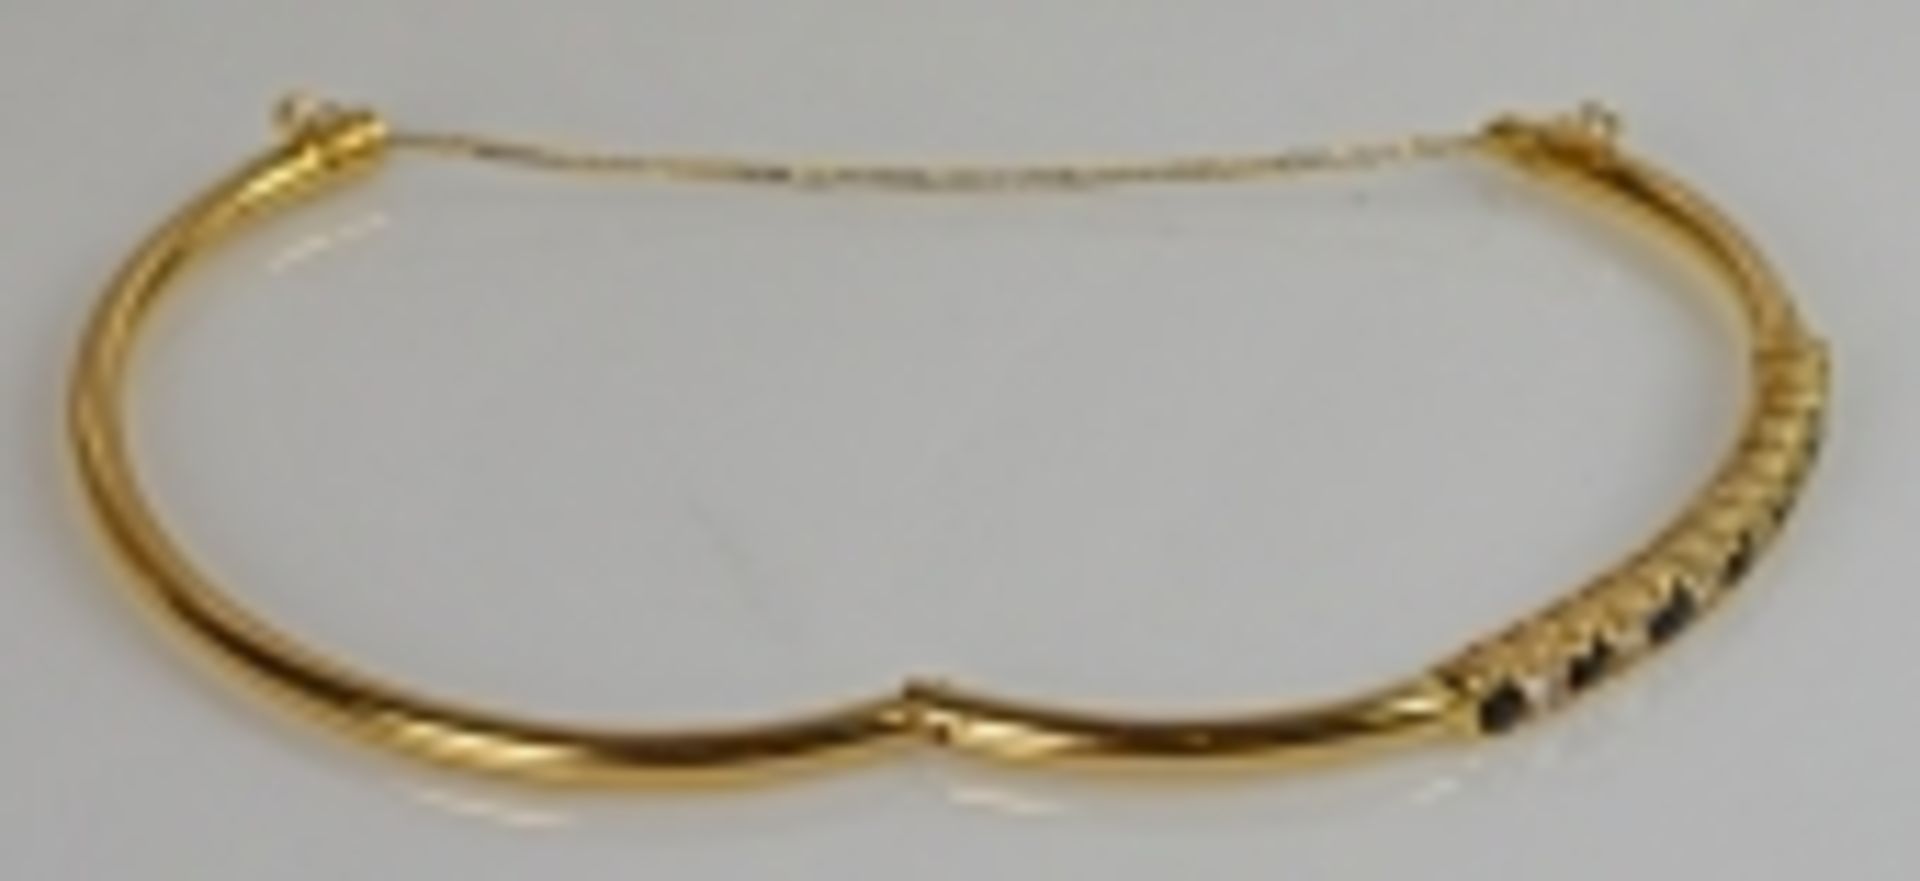 ARMREIF Bogen besetzt mit 7 geschliffenen Saphiren und 6 Diamanten, w, Gelbgoldfassung um 10ct, - Bild 3 aus 3